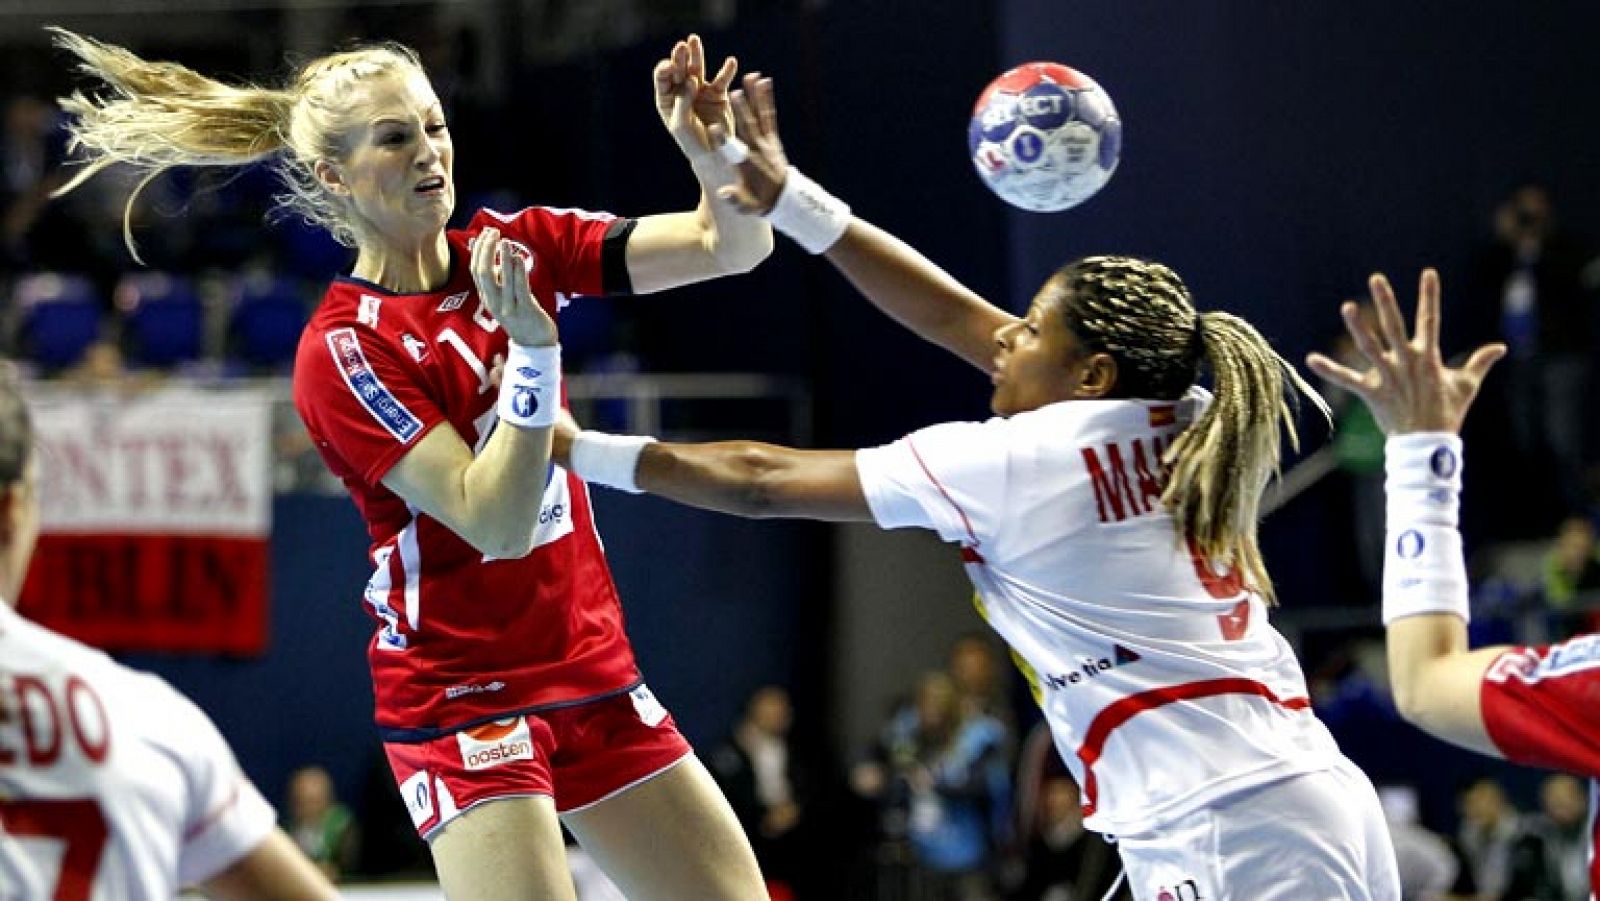 La selección española de balonmano femenino ha debutado con  derrota en el Mundial que se está celebrando en Serbia tras caer  (22-20) ante Noruega en el Kristalna Dvoranaen de Zrenjanin, un duelo  muy igualado en el que la defensora del título fue d